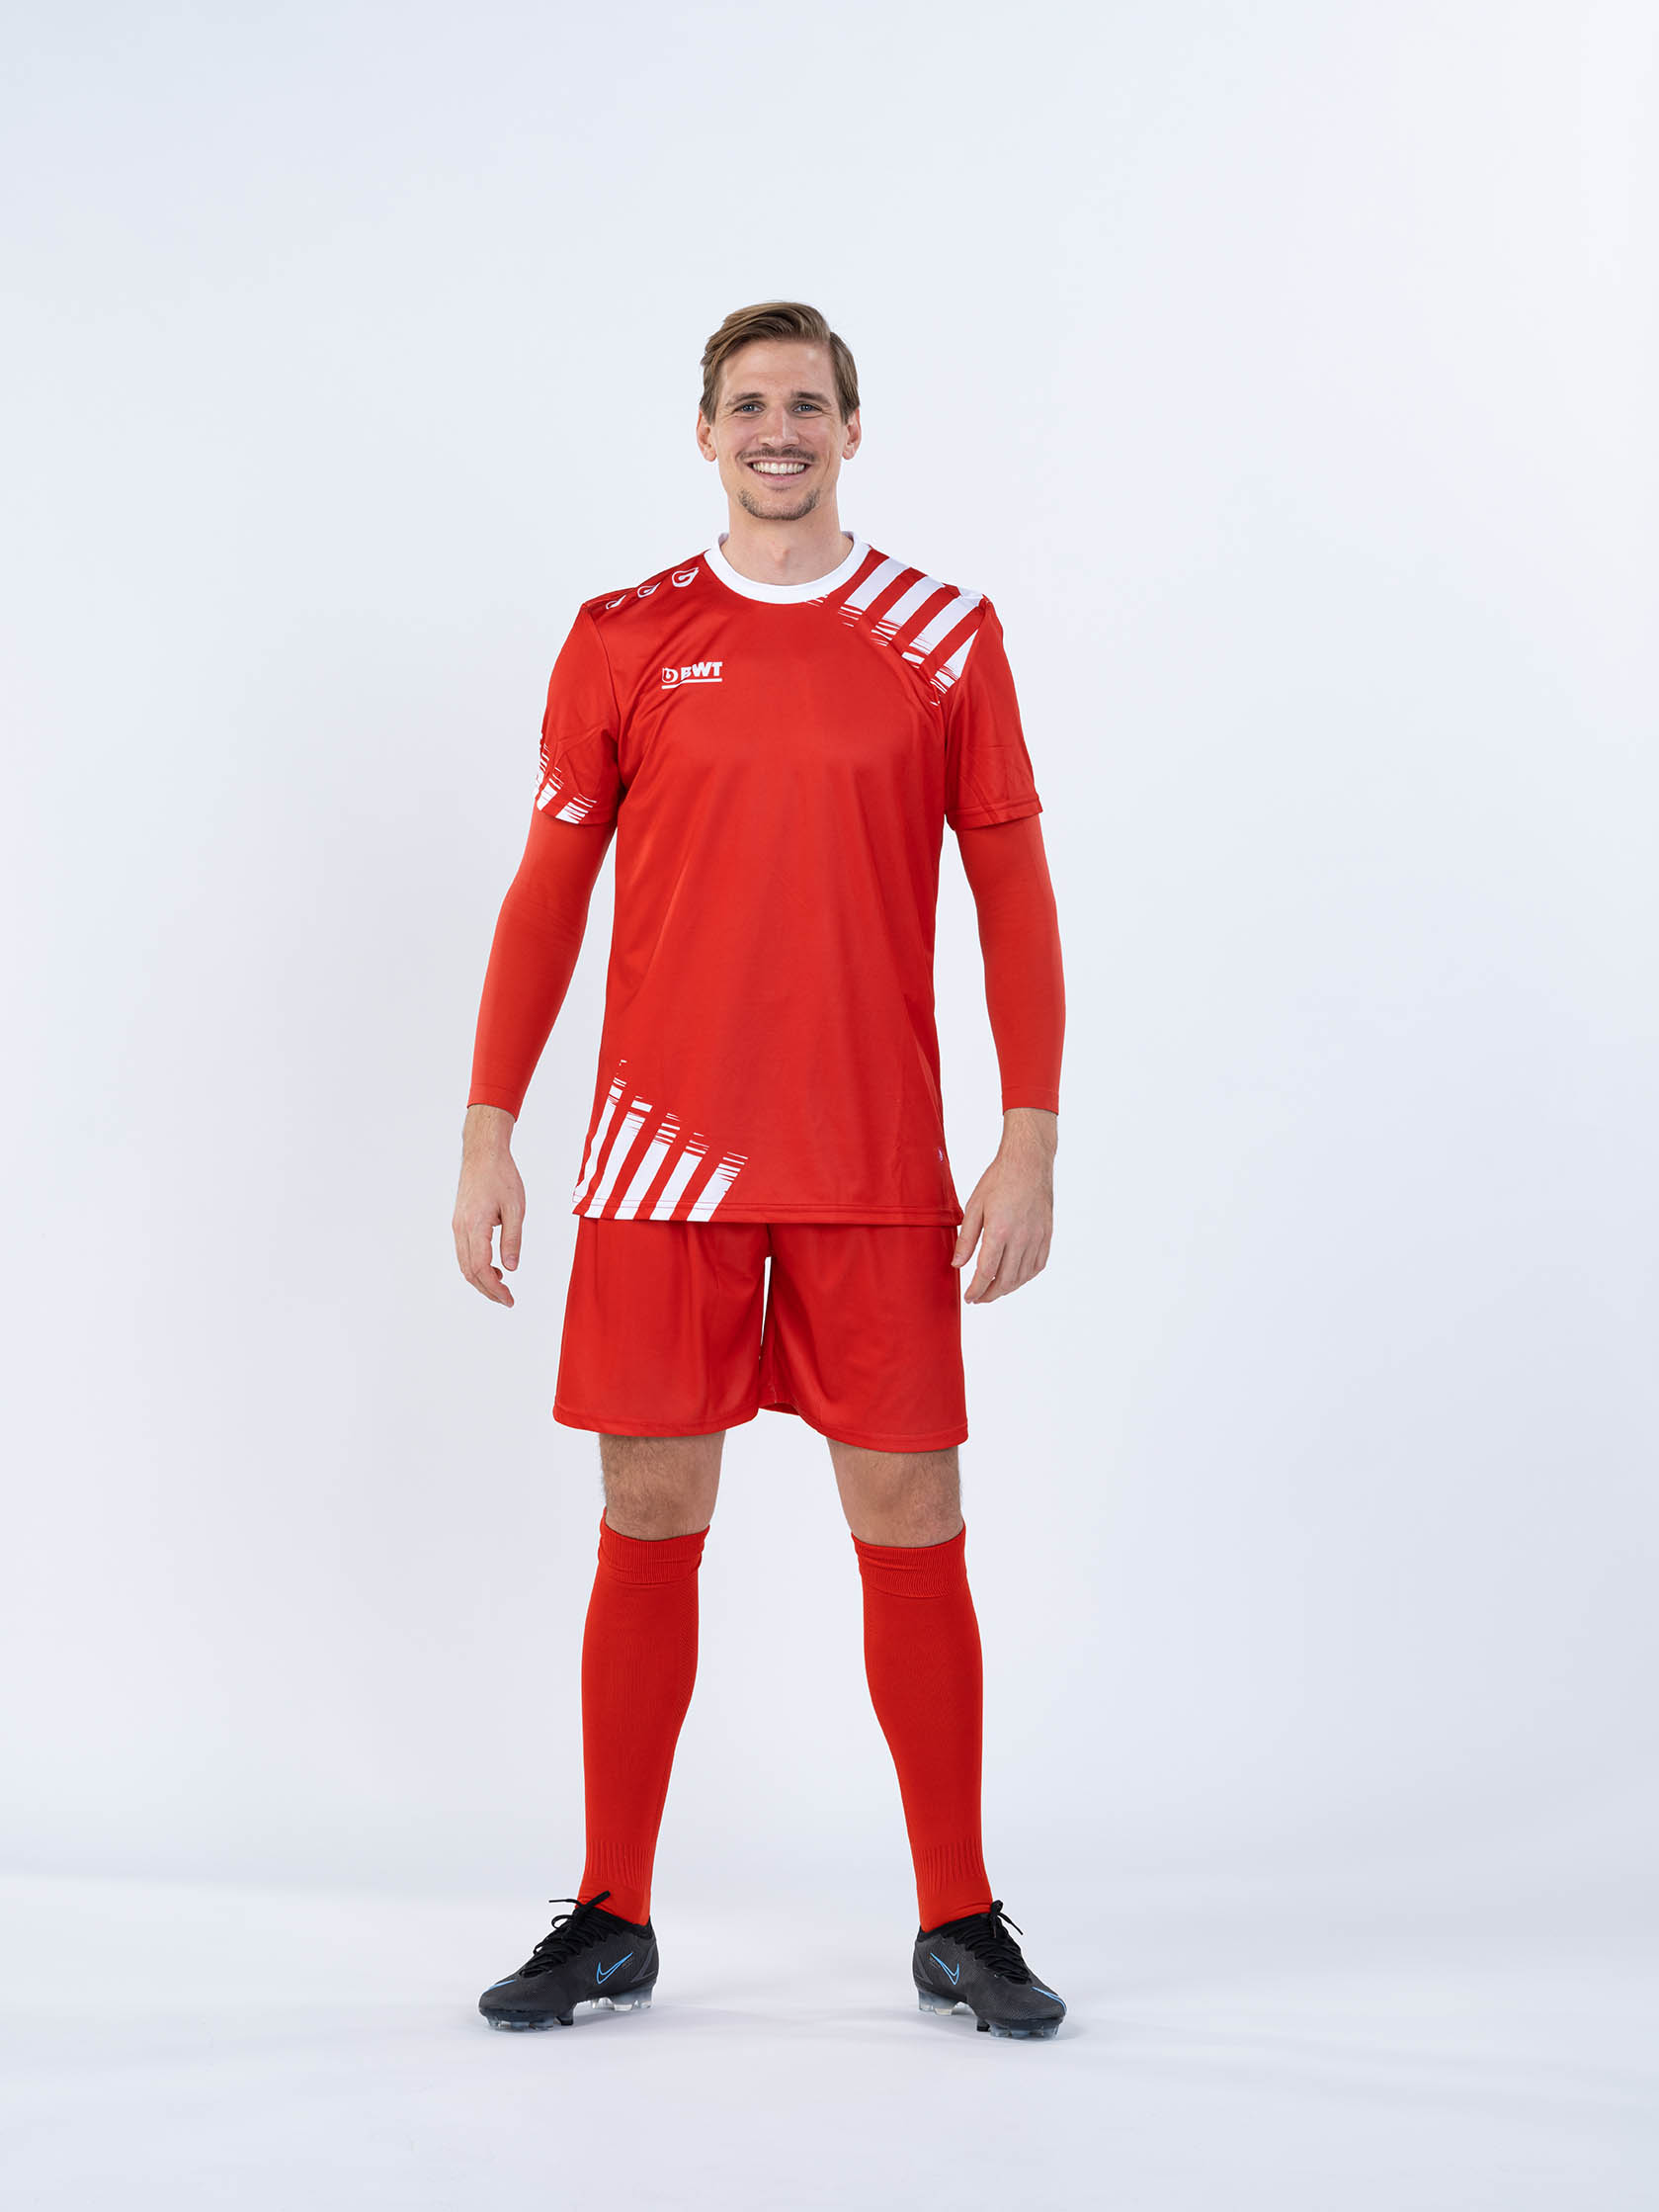 Herr trägt BWT One Fußballtrikot mit Shirt, Hose und Stutzen in rot